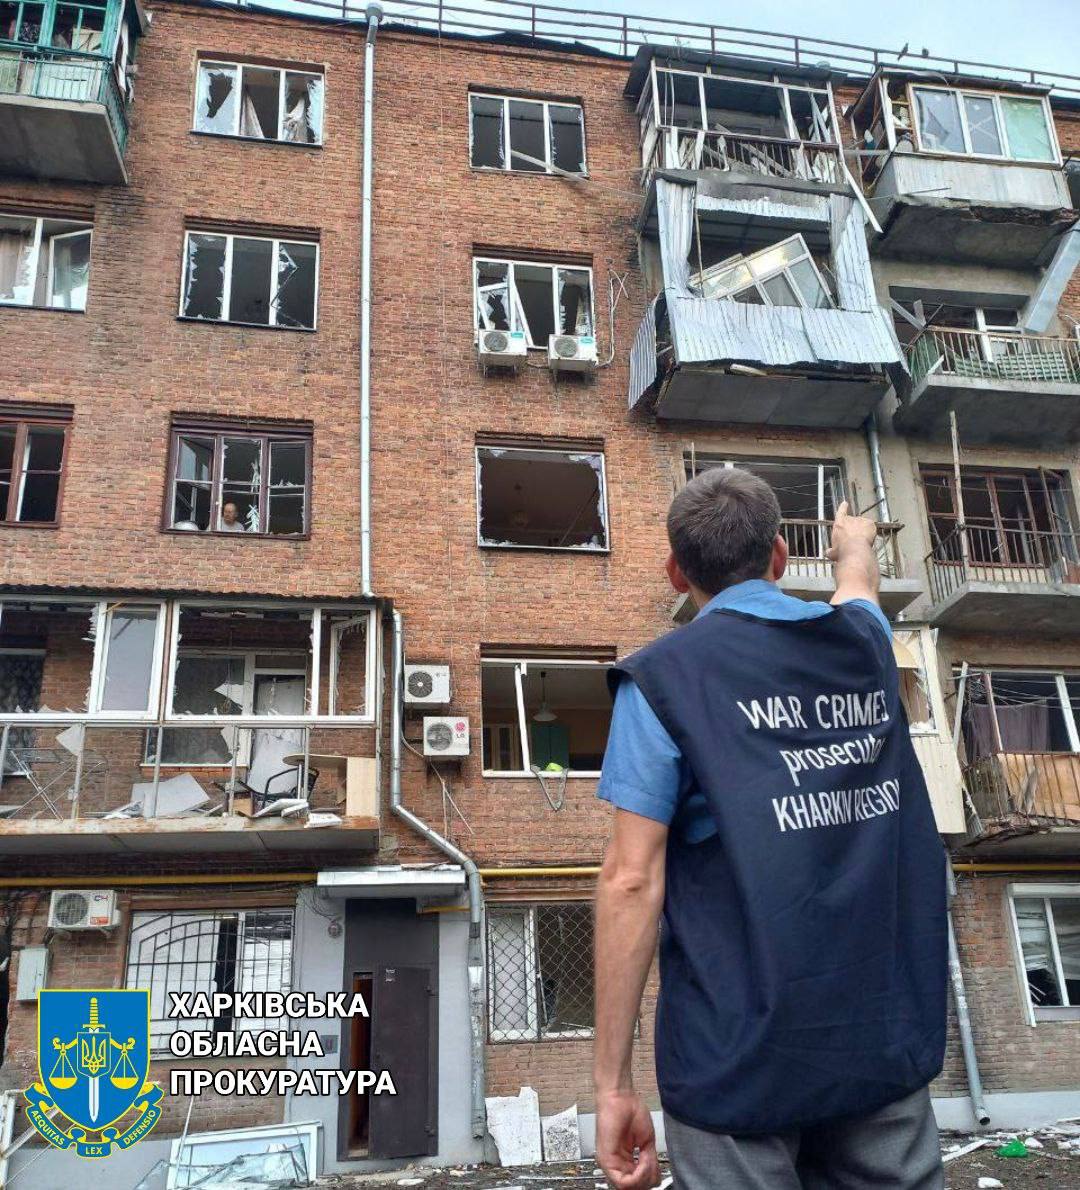 Наслідки обстрілу центру Харкова, 11 серпня, фото: Харківська обласна прокуратура